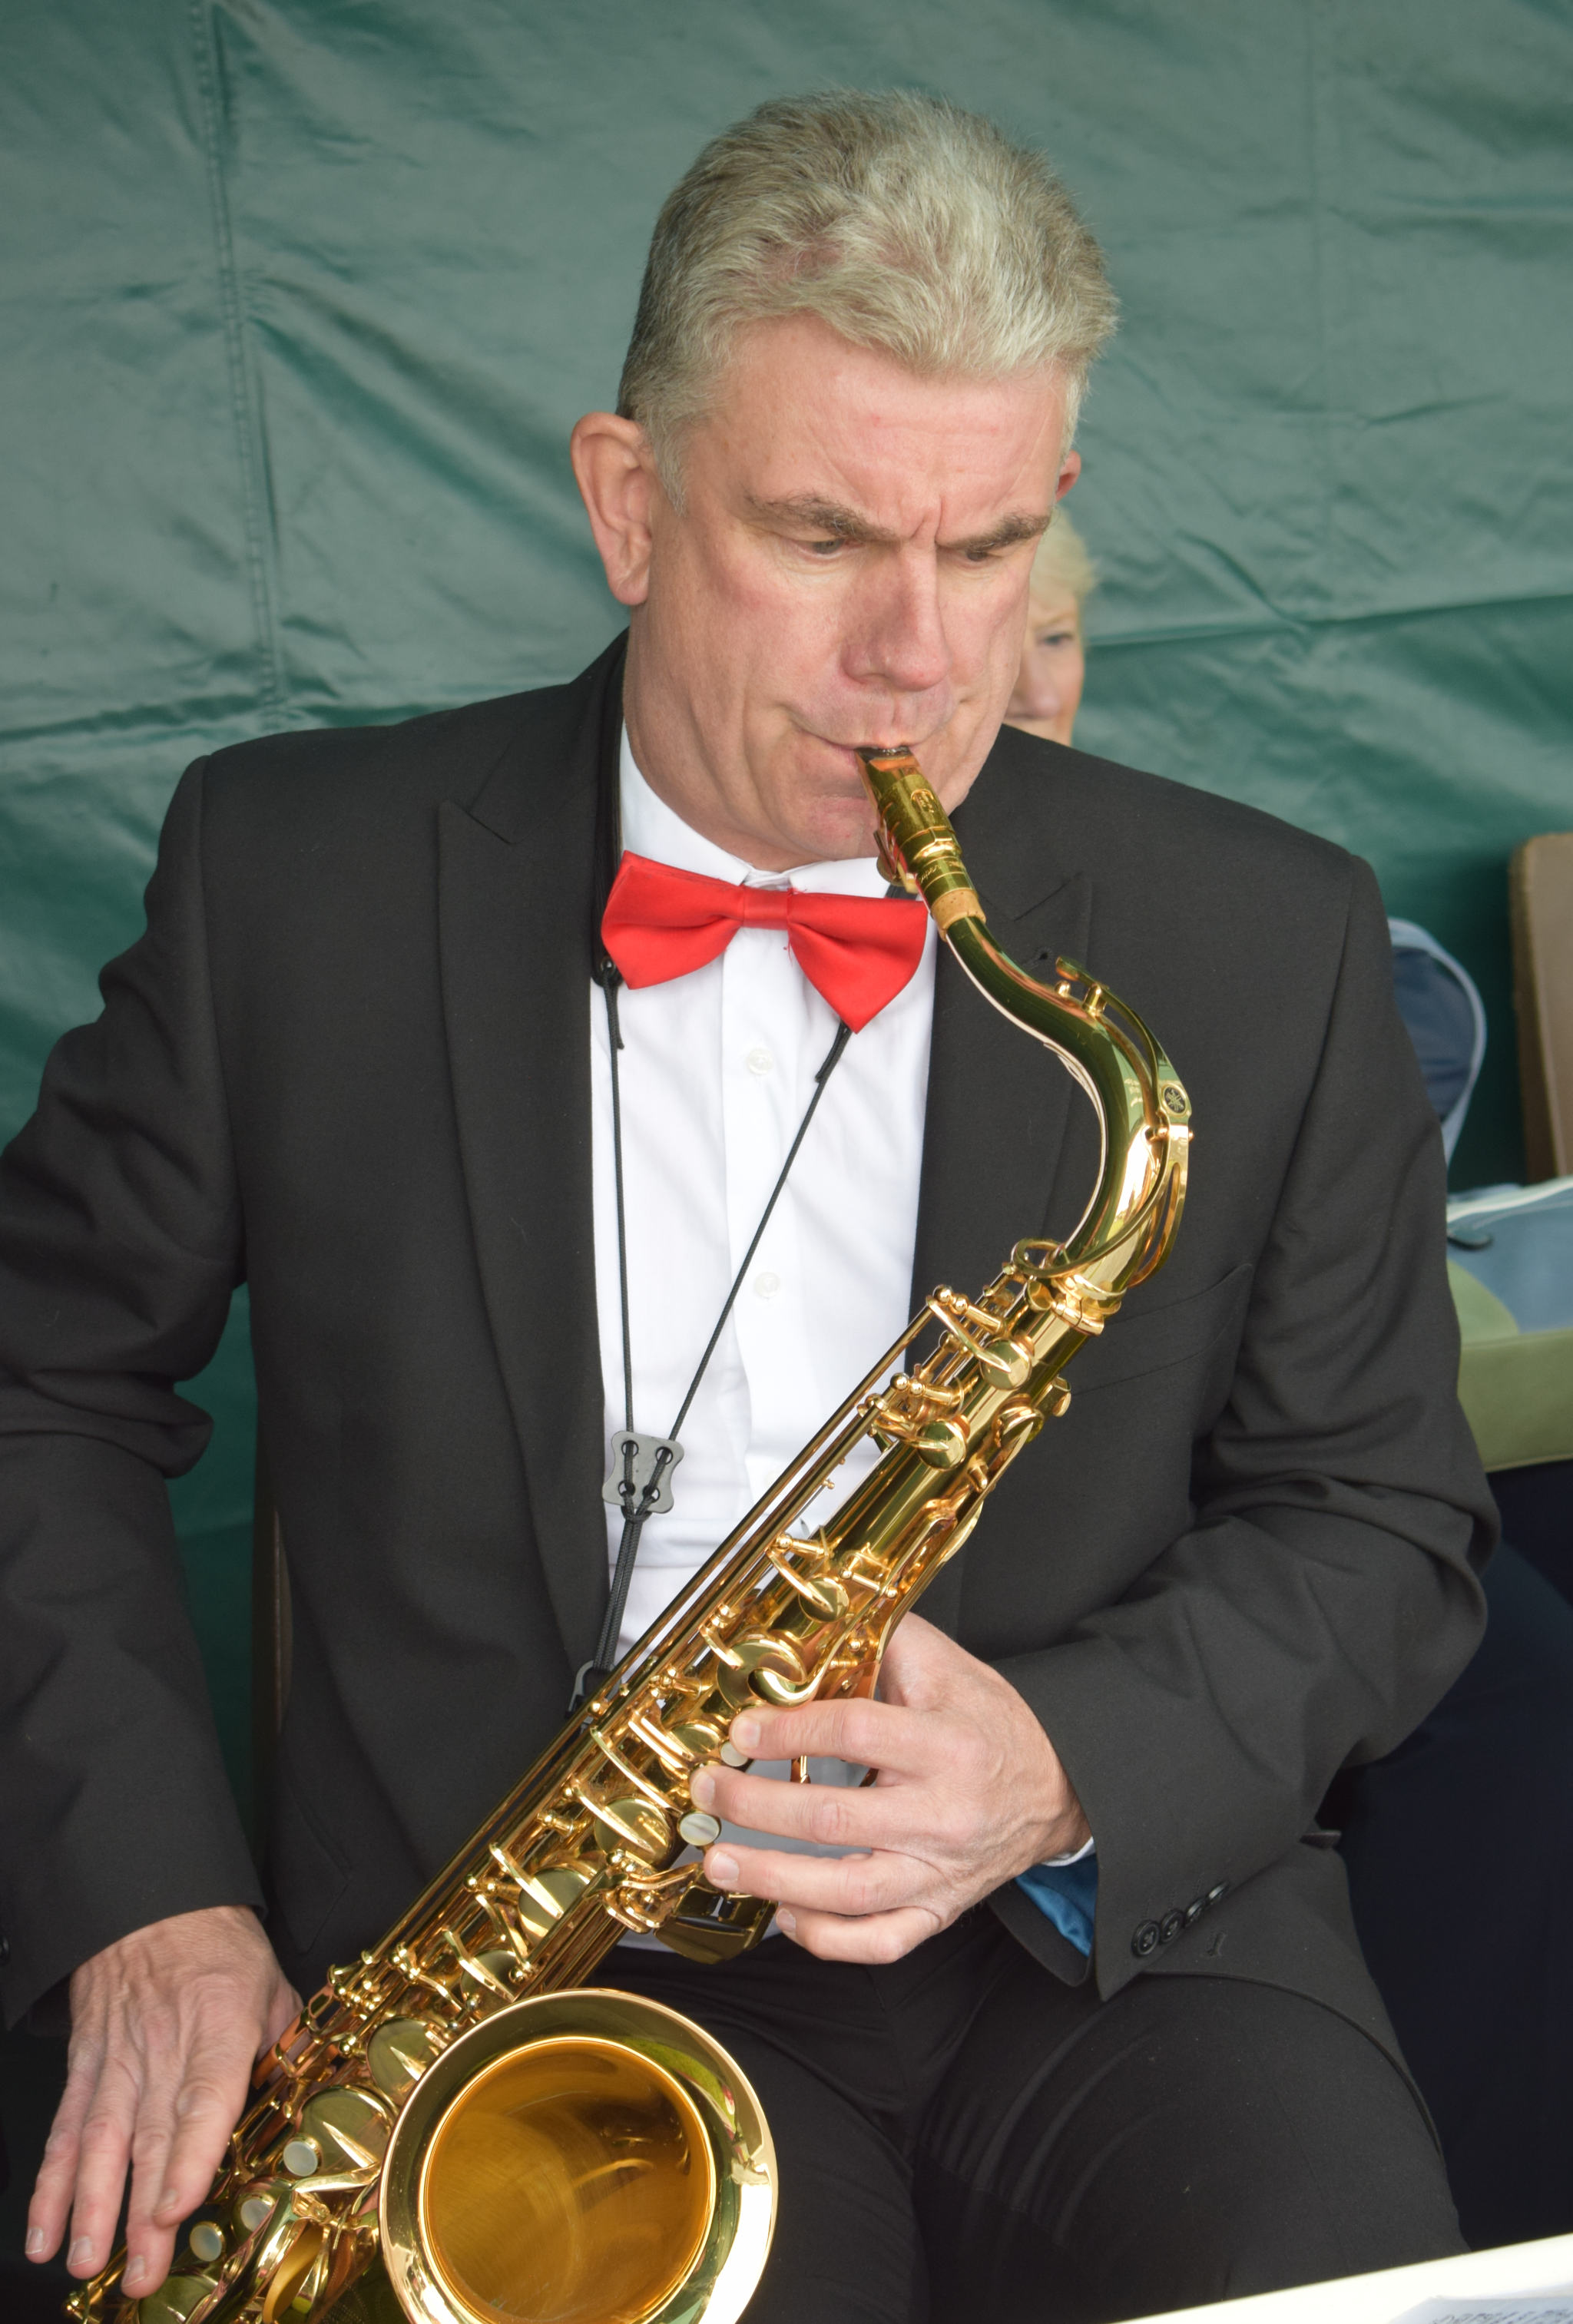 Clive on tenor sax